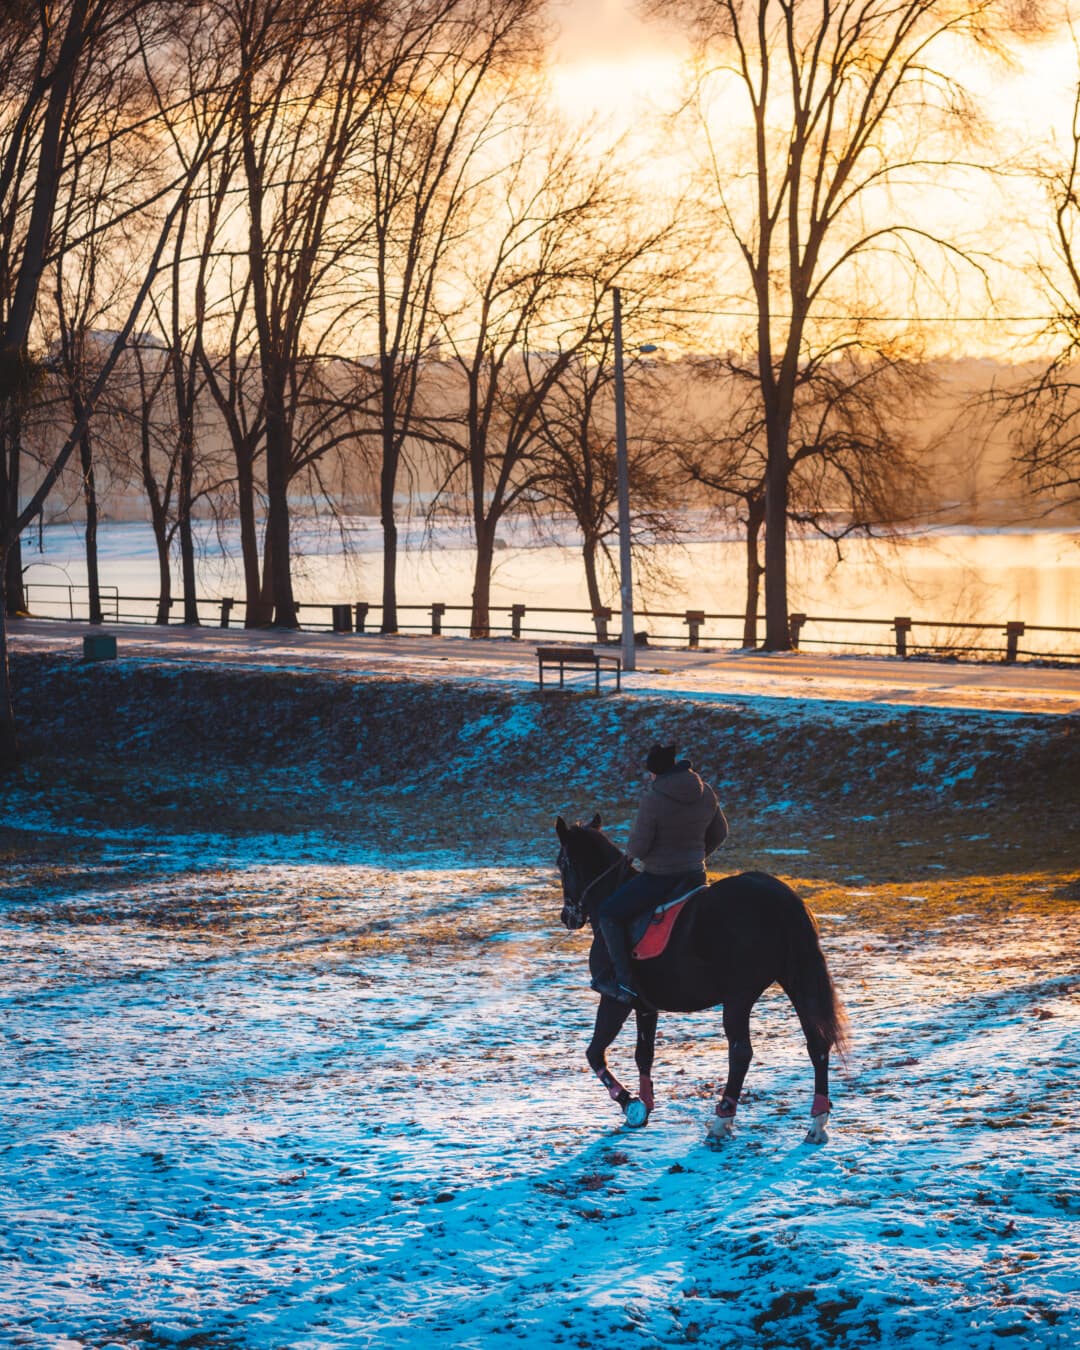 Sonnenuntergang, Fahrer, Pferd, Schnee, Winter, Sonnenstrahlen, im freien, Sonne, Freizeit, Dämmerung